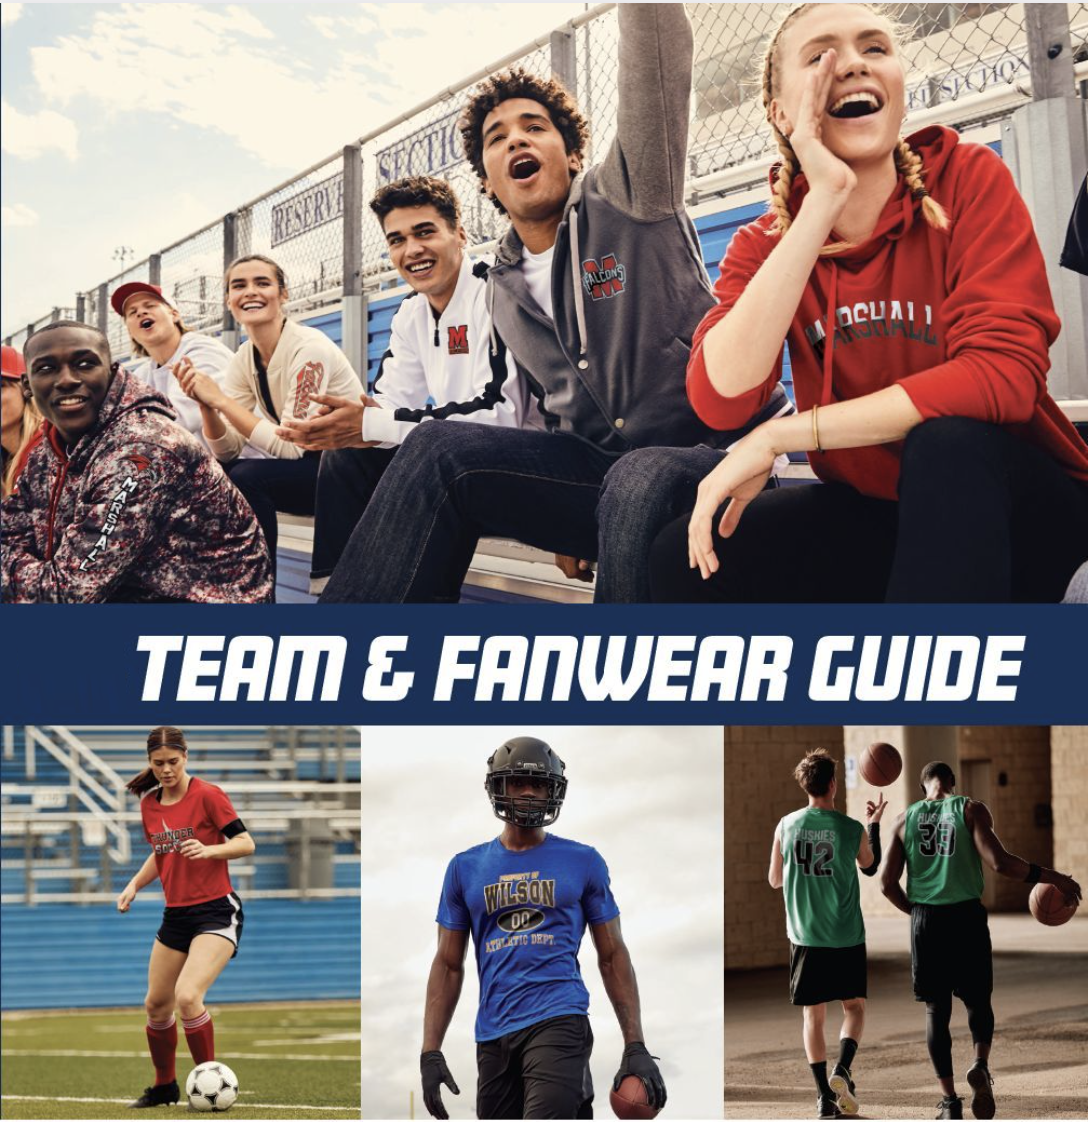 Team Fanwear Guide